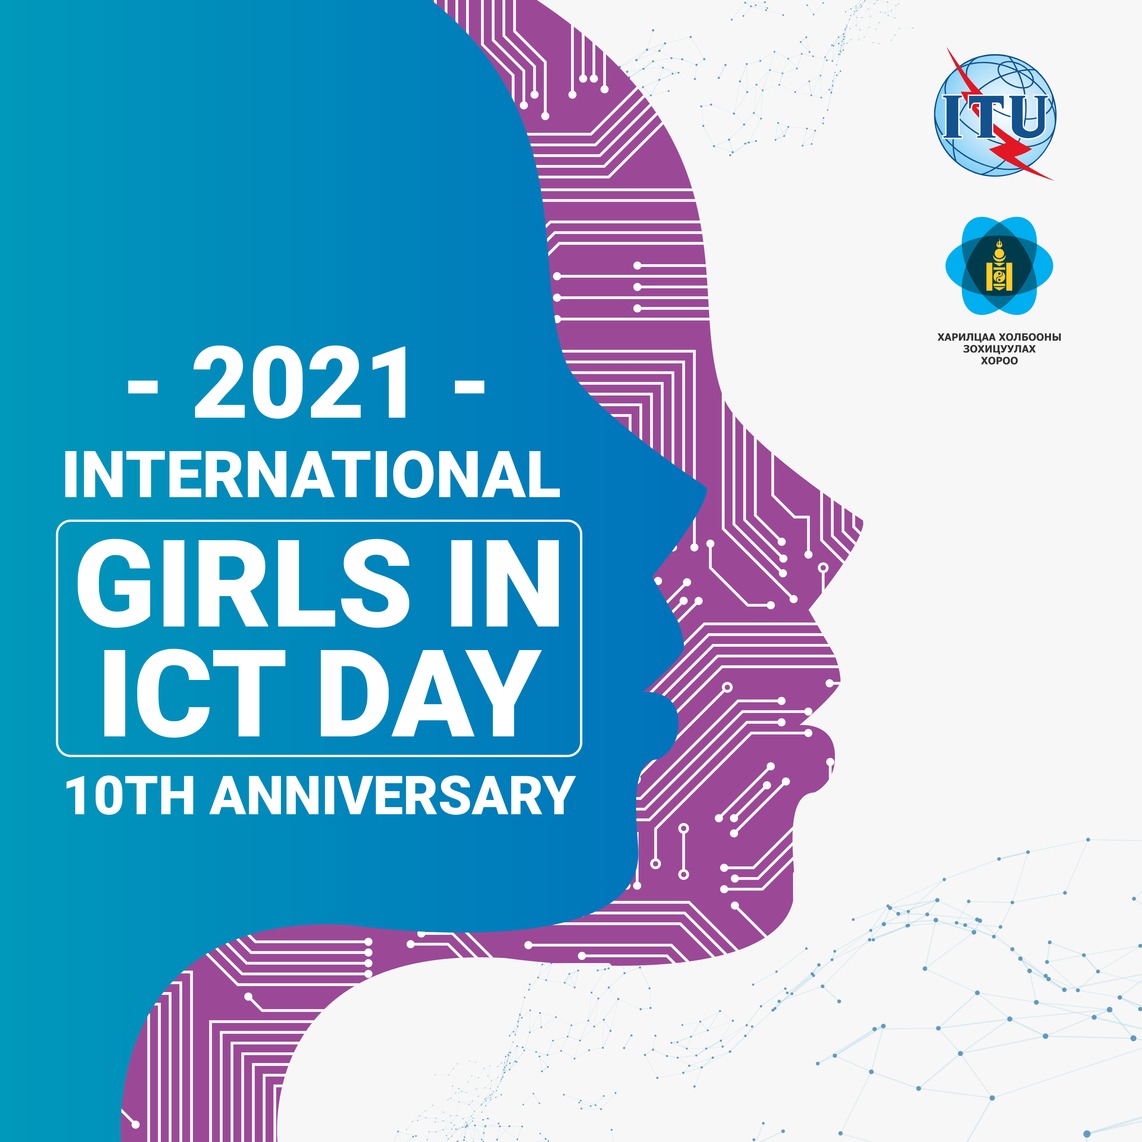 Олон Улсын " Харилцаа холбоо, мэдээллийн технологийн салбарын бүсгүйчүүдийн өдөр "-ийн 10 жилийн ойн баярын мэнд хүргэе